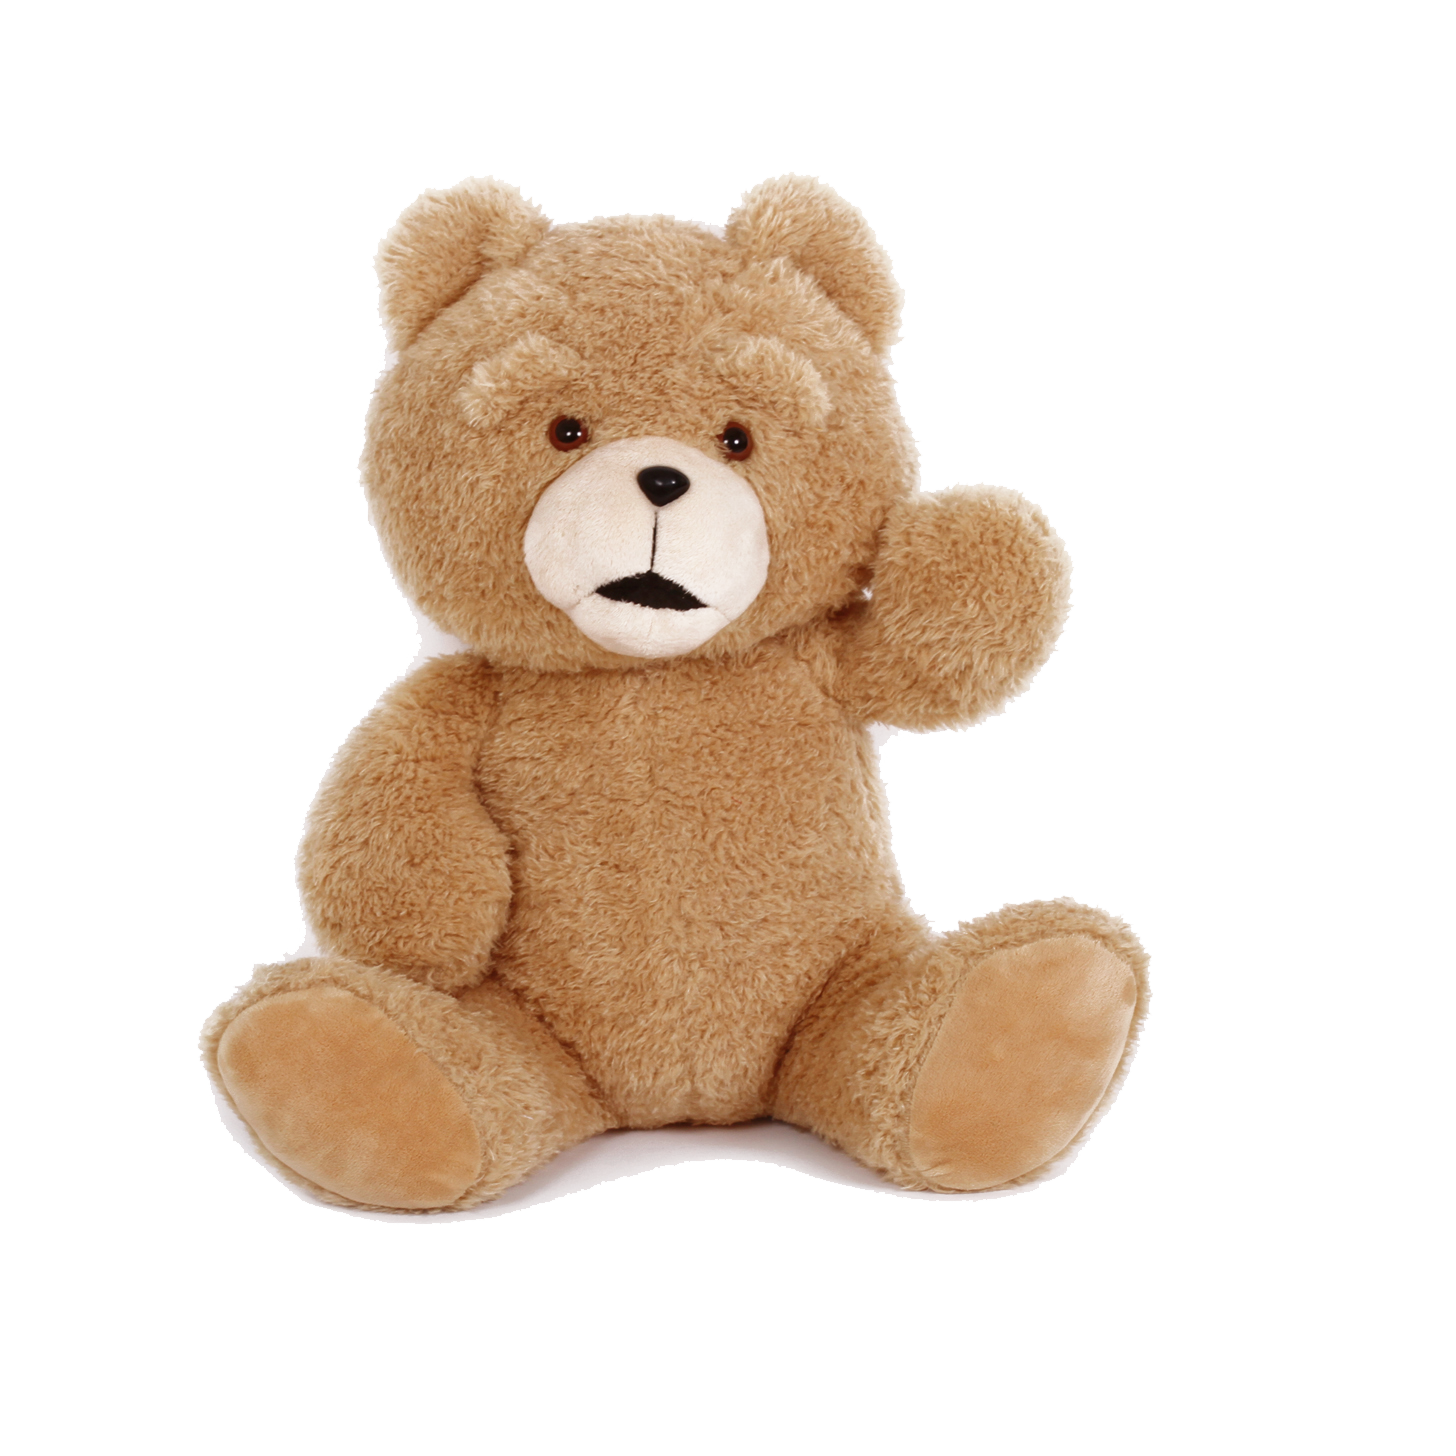 A brown teddy bear. Тедди Беар. Тедди Беар игрушка. Медвежонок игрушка. Игрушки без фона.